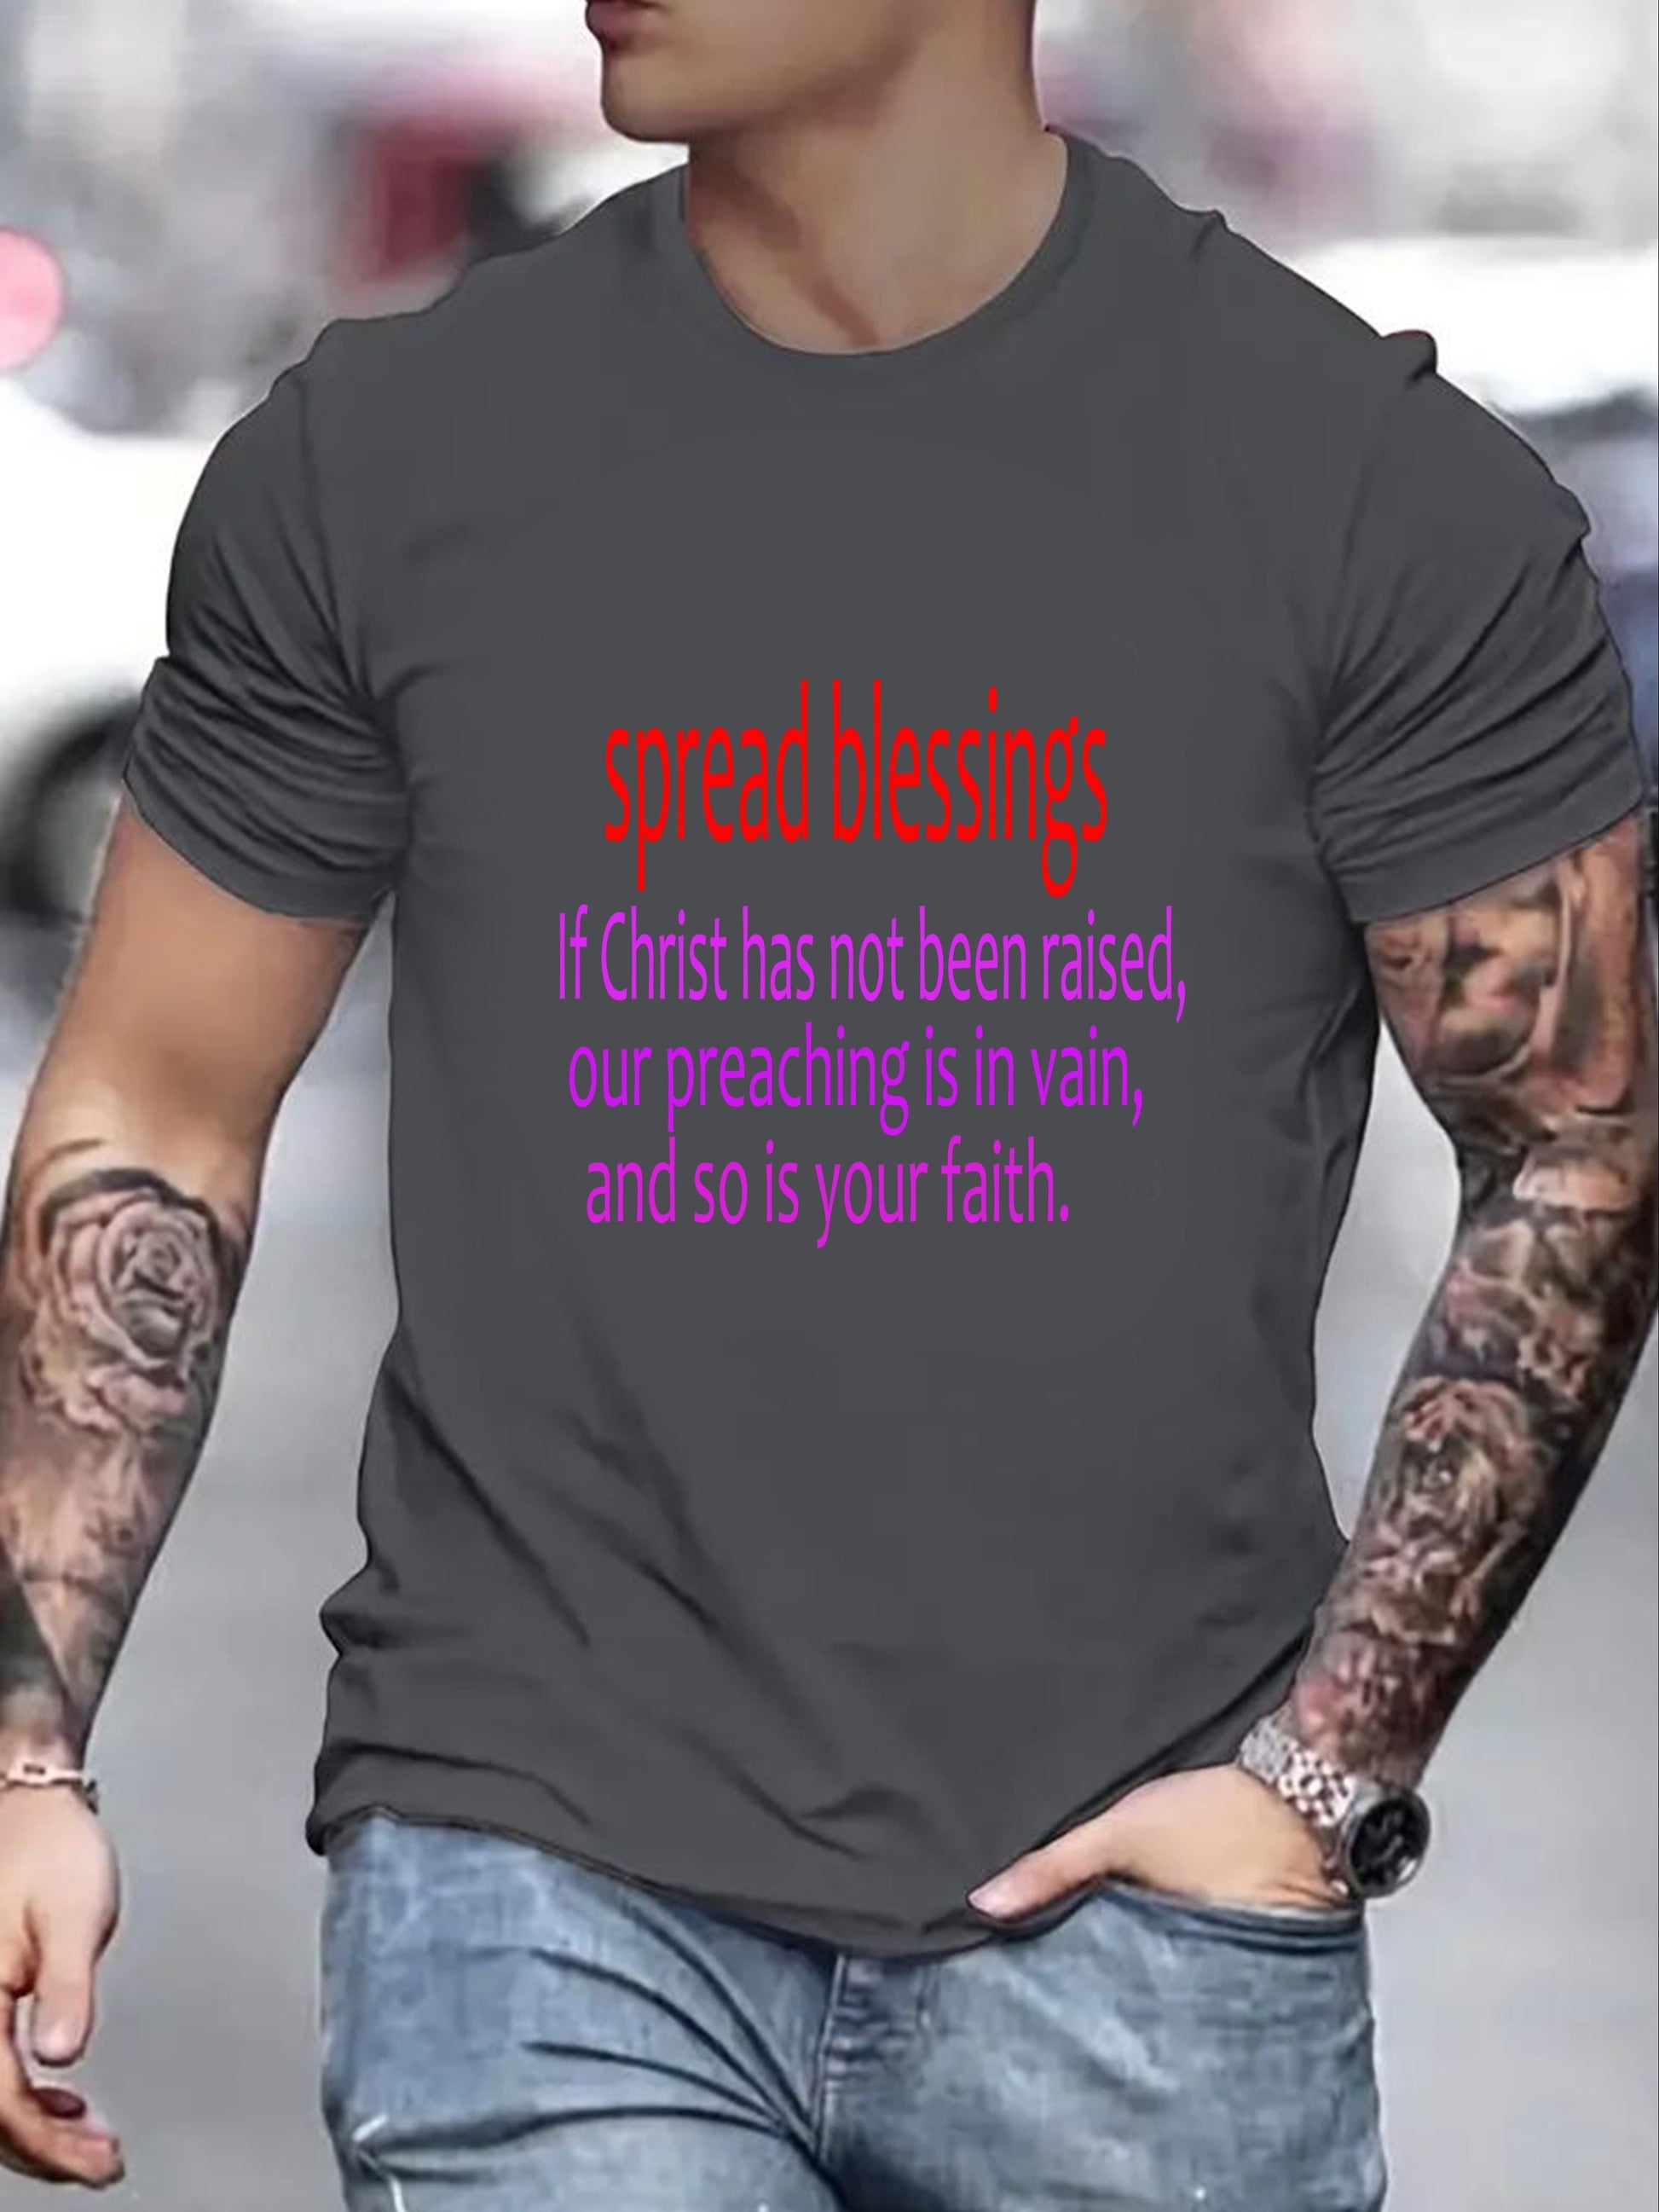 Spread Blessings Men's Christian T-shirt claimedbygoddesigns